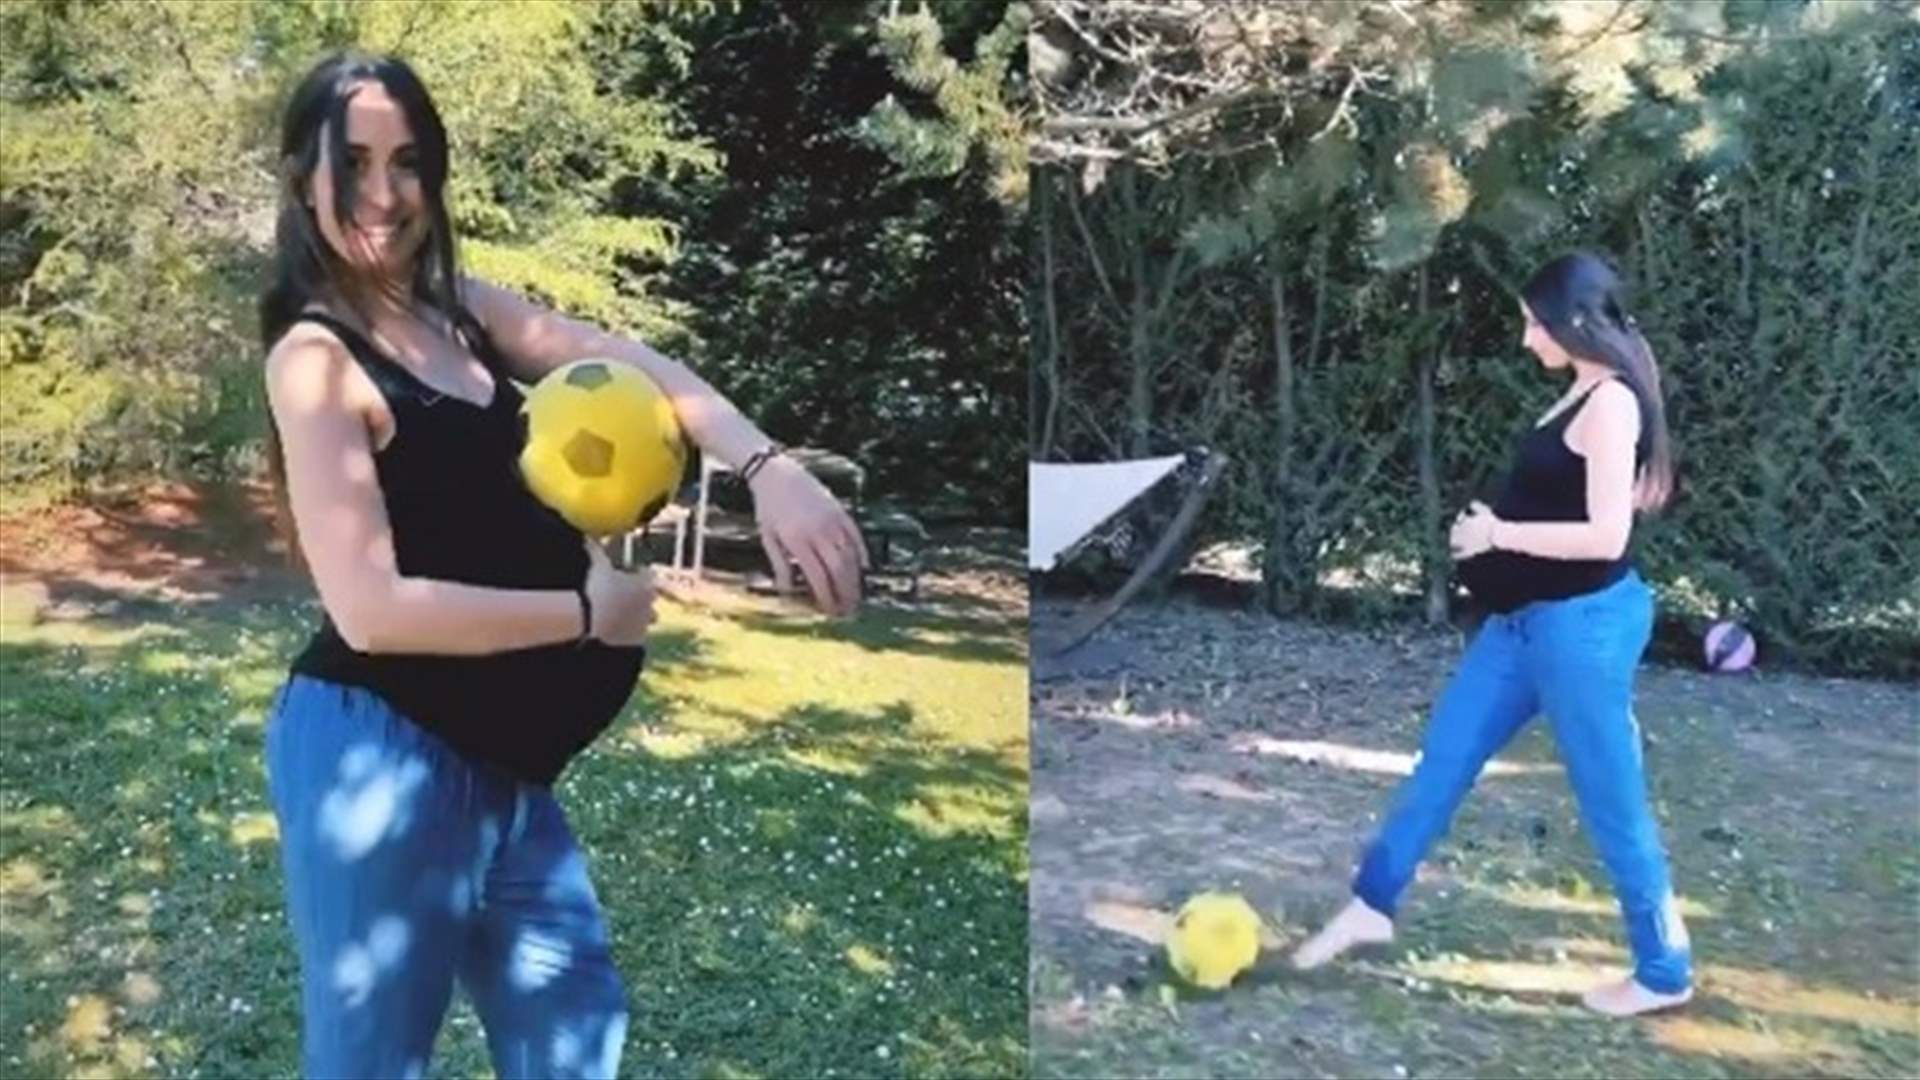 هبة طوجي تمارس رياضة كرة القدم وهي حامل (فيديو)